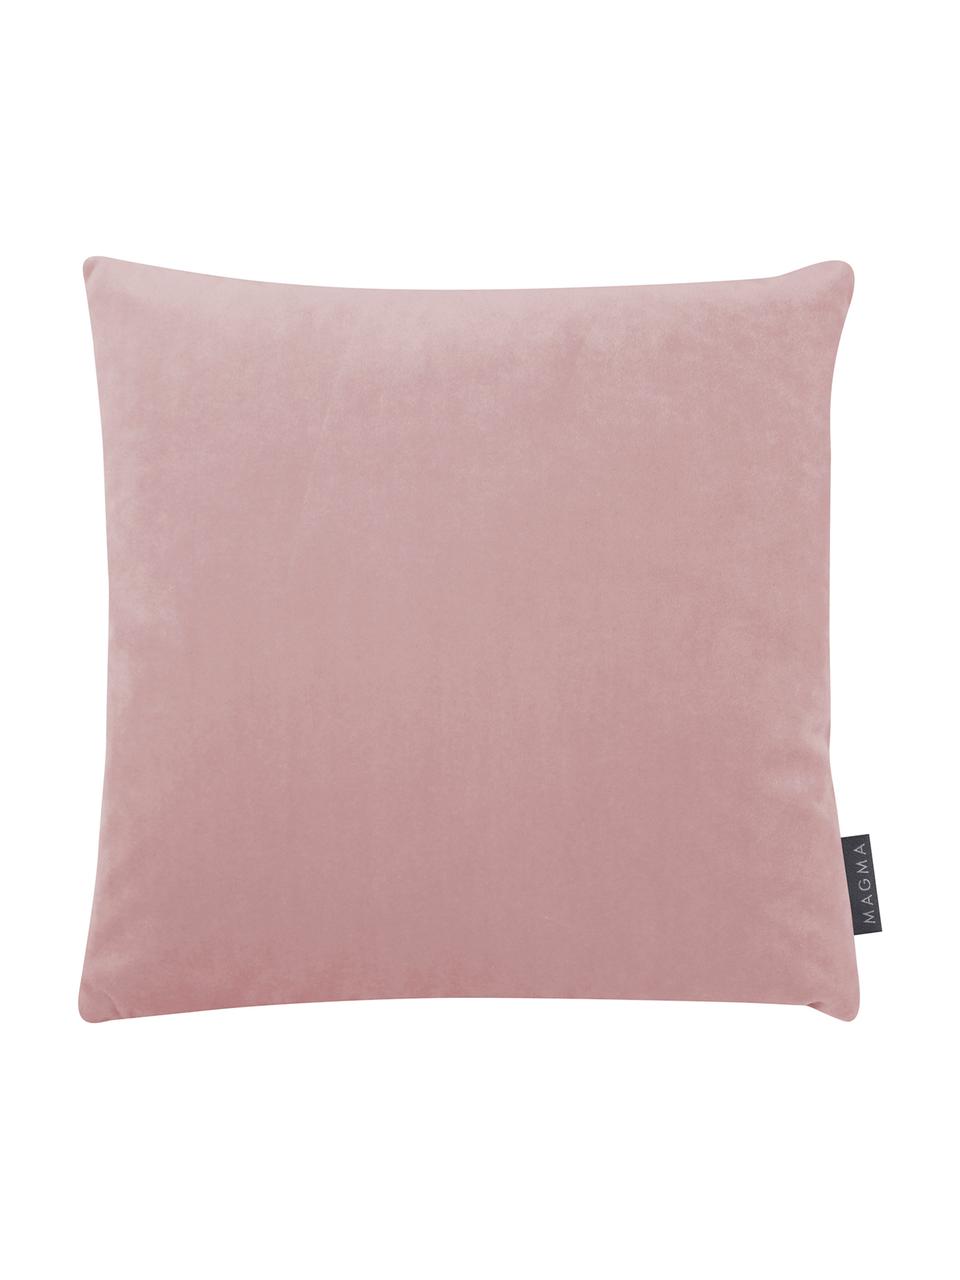 Poszewka na poduszkę z aksamitu Nobless, 100% aksamit poliestrowy, Blady różowy, S 40 x D 40 cm